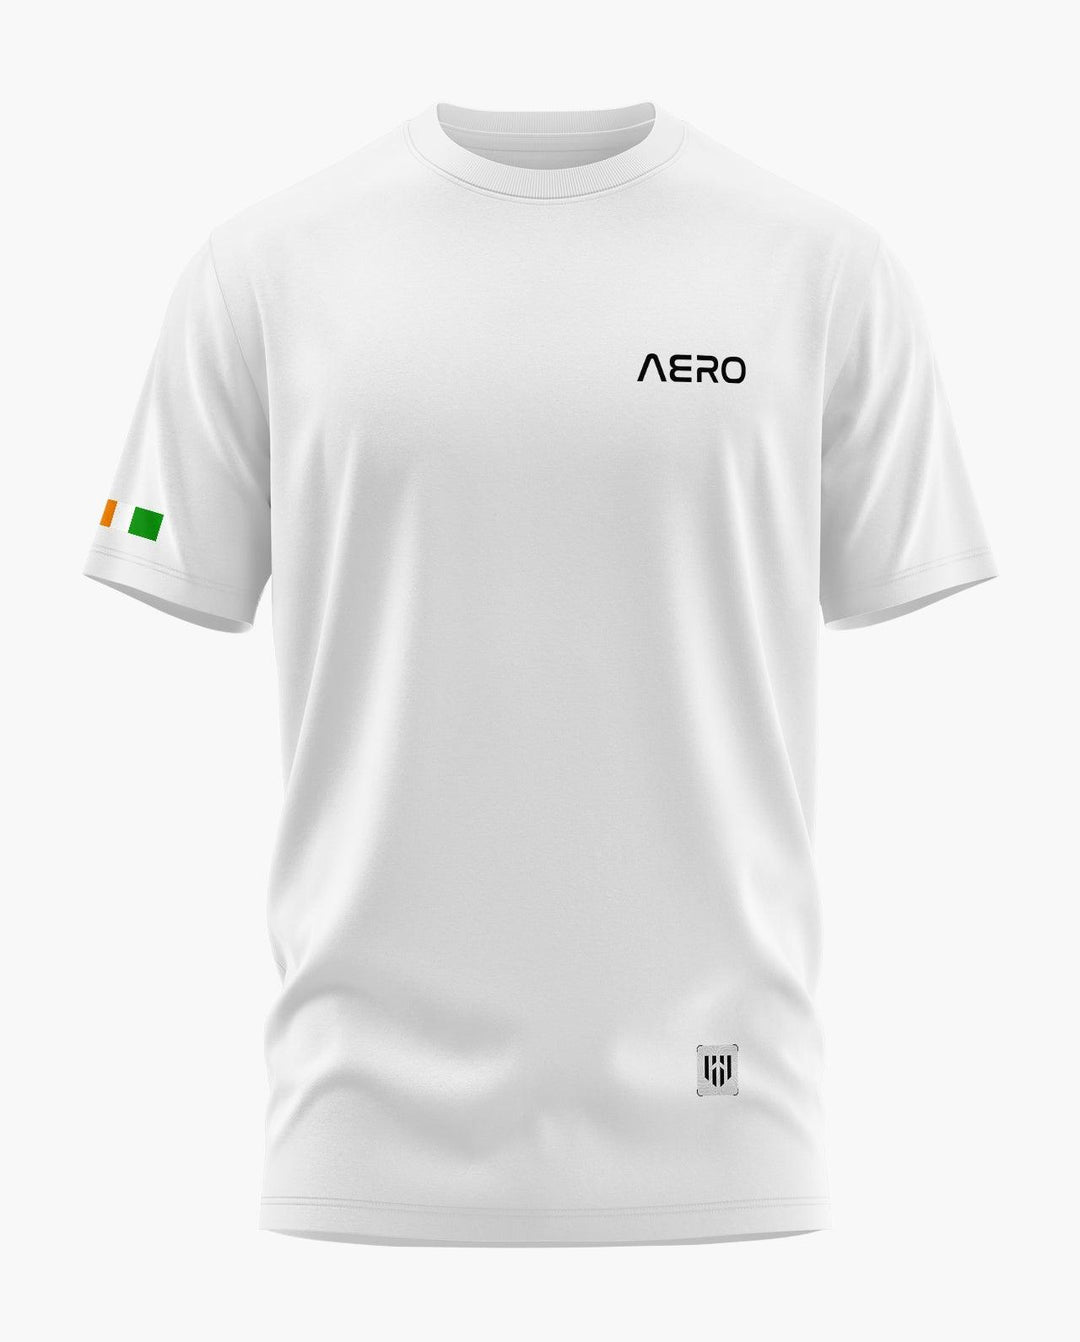 AERO INDIA T-Shirt - Aero Armour